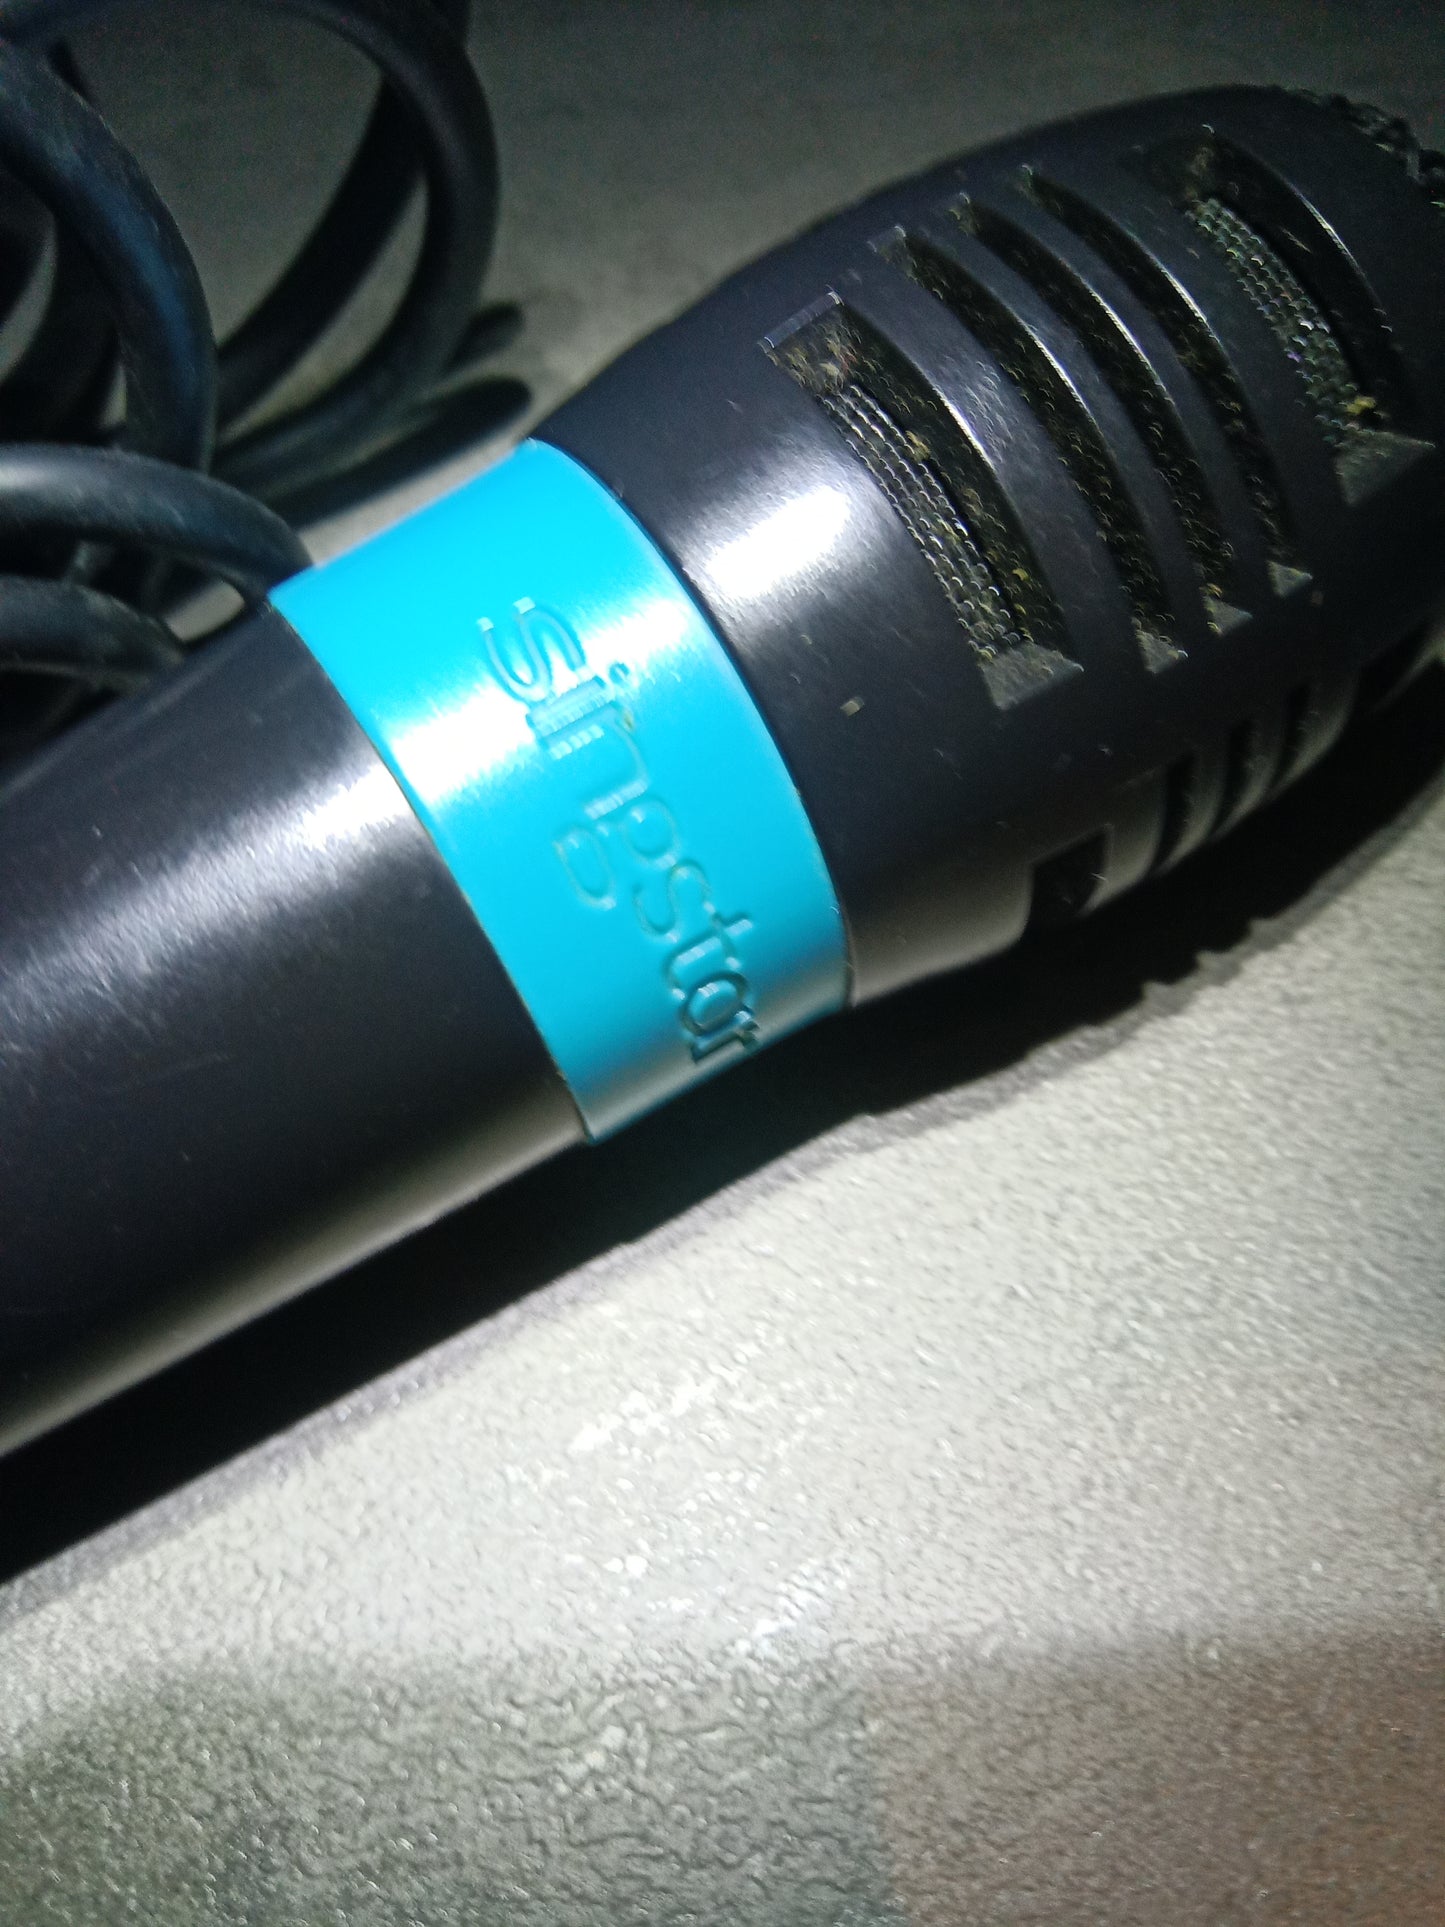 Microfono Singstar blu non funzionante